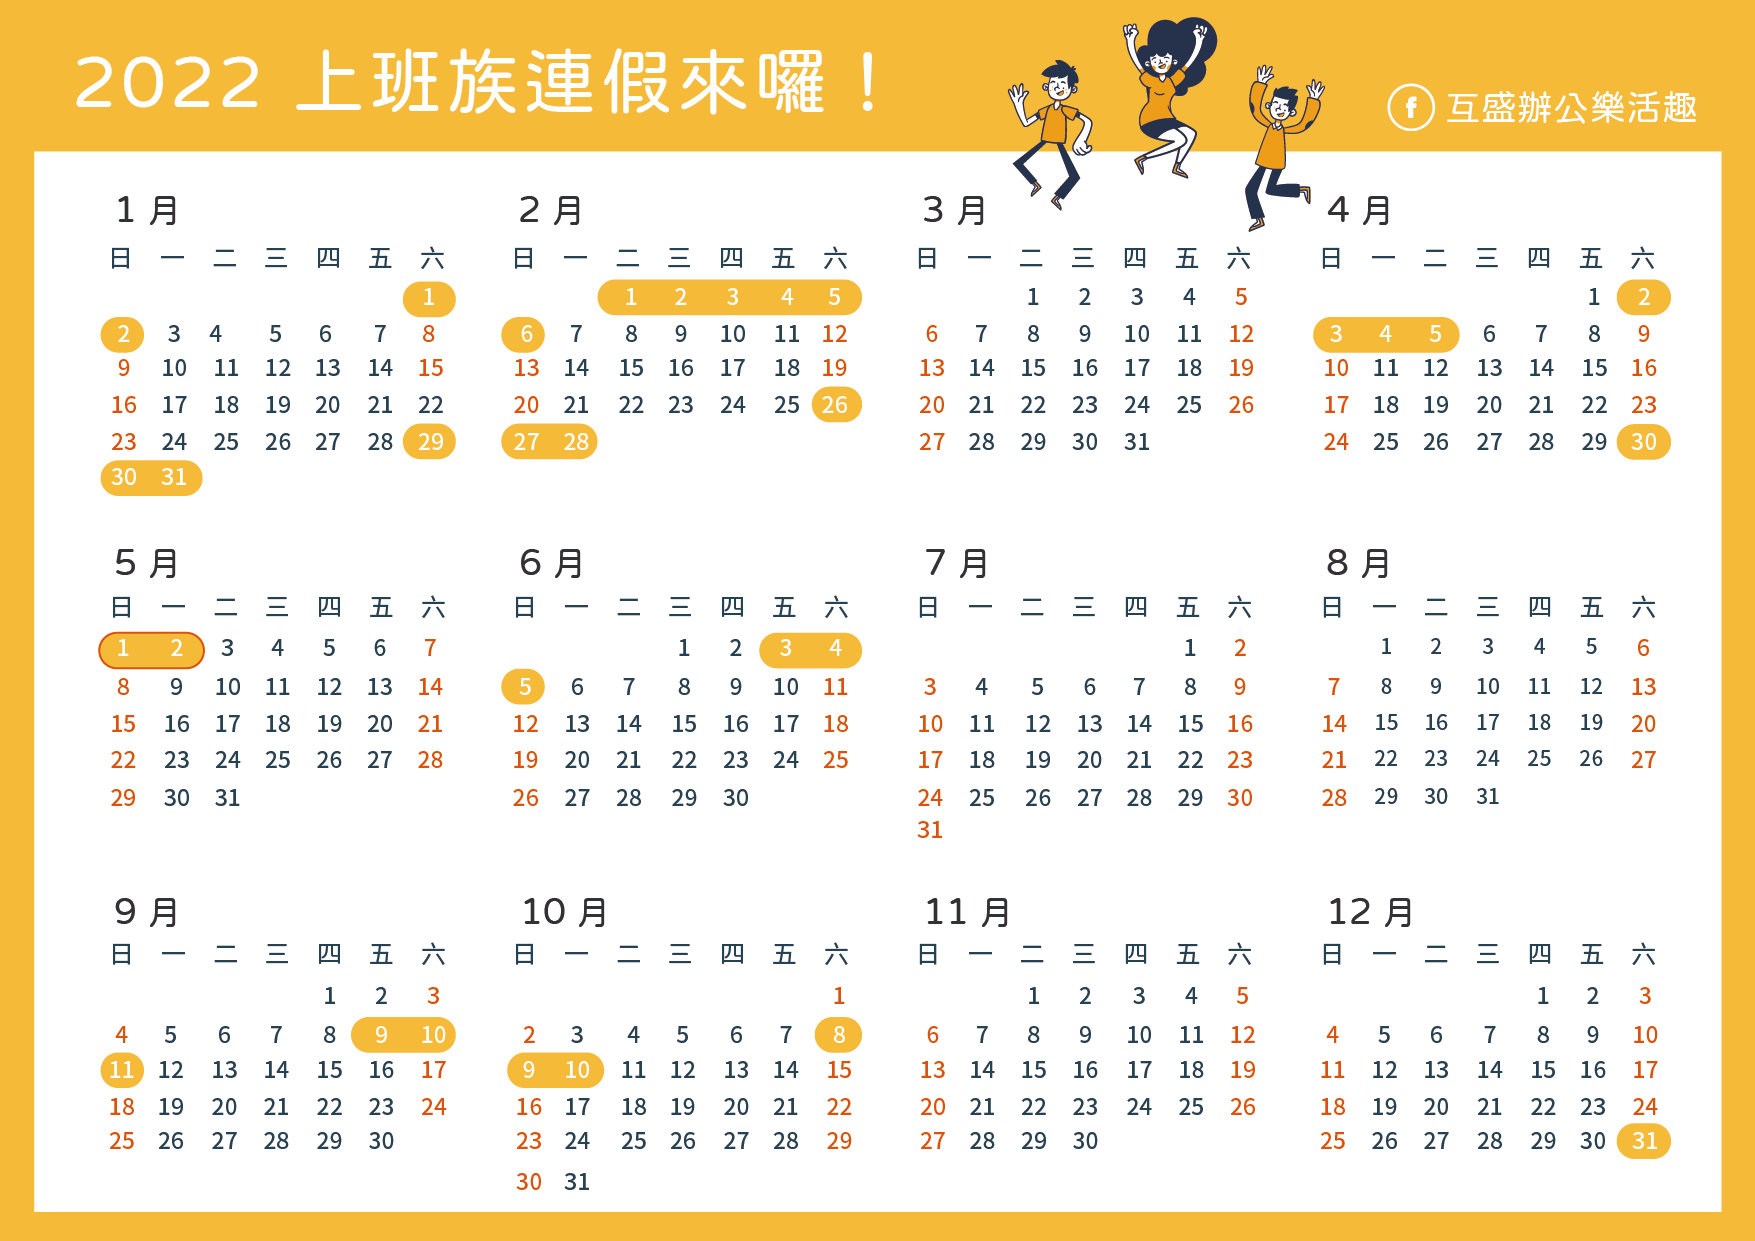 2022行事曆_2022連假行事曆_2022行事曆下載_2022 calendar